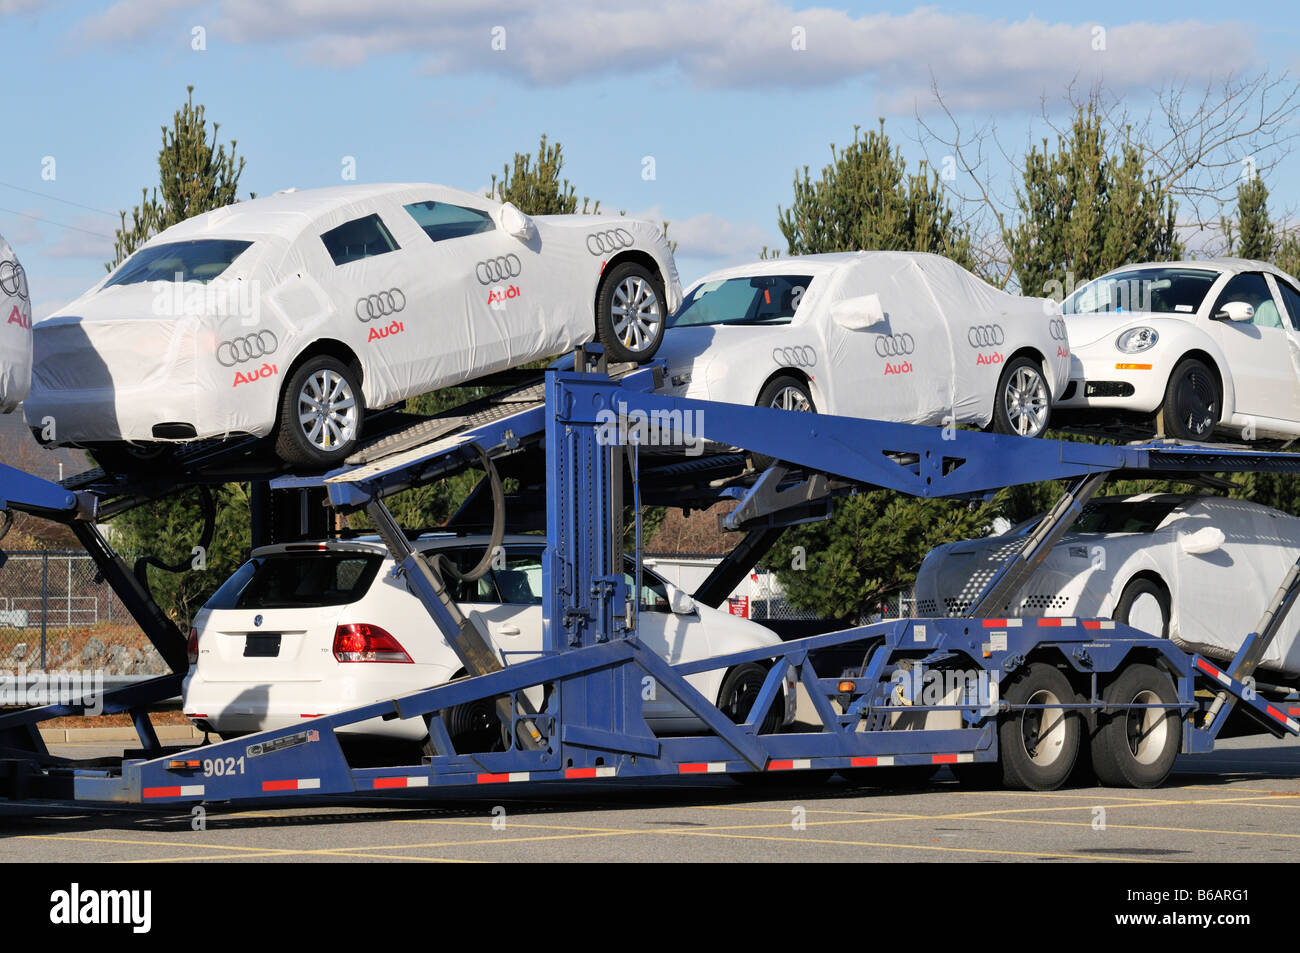 Car carrier con Audi y Volkswagen coches Foto de stock